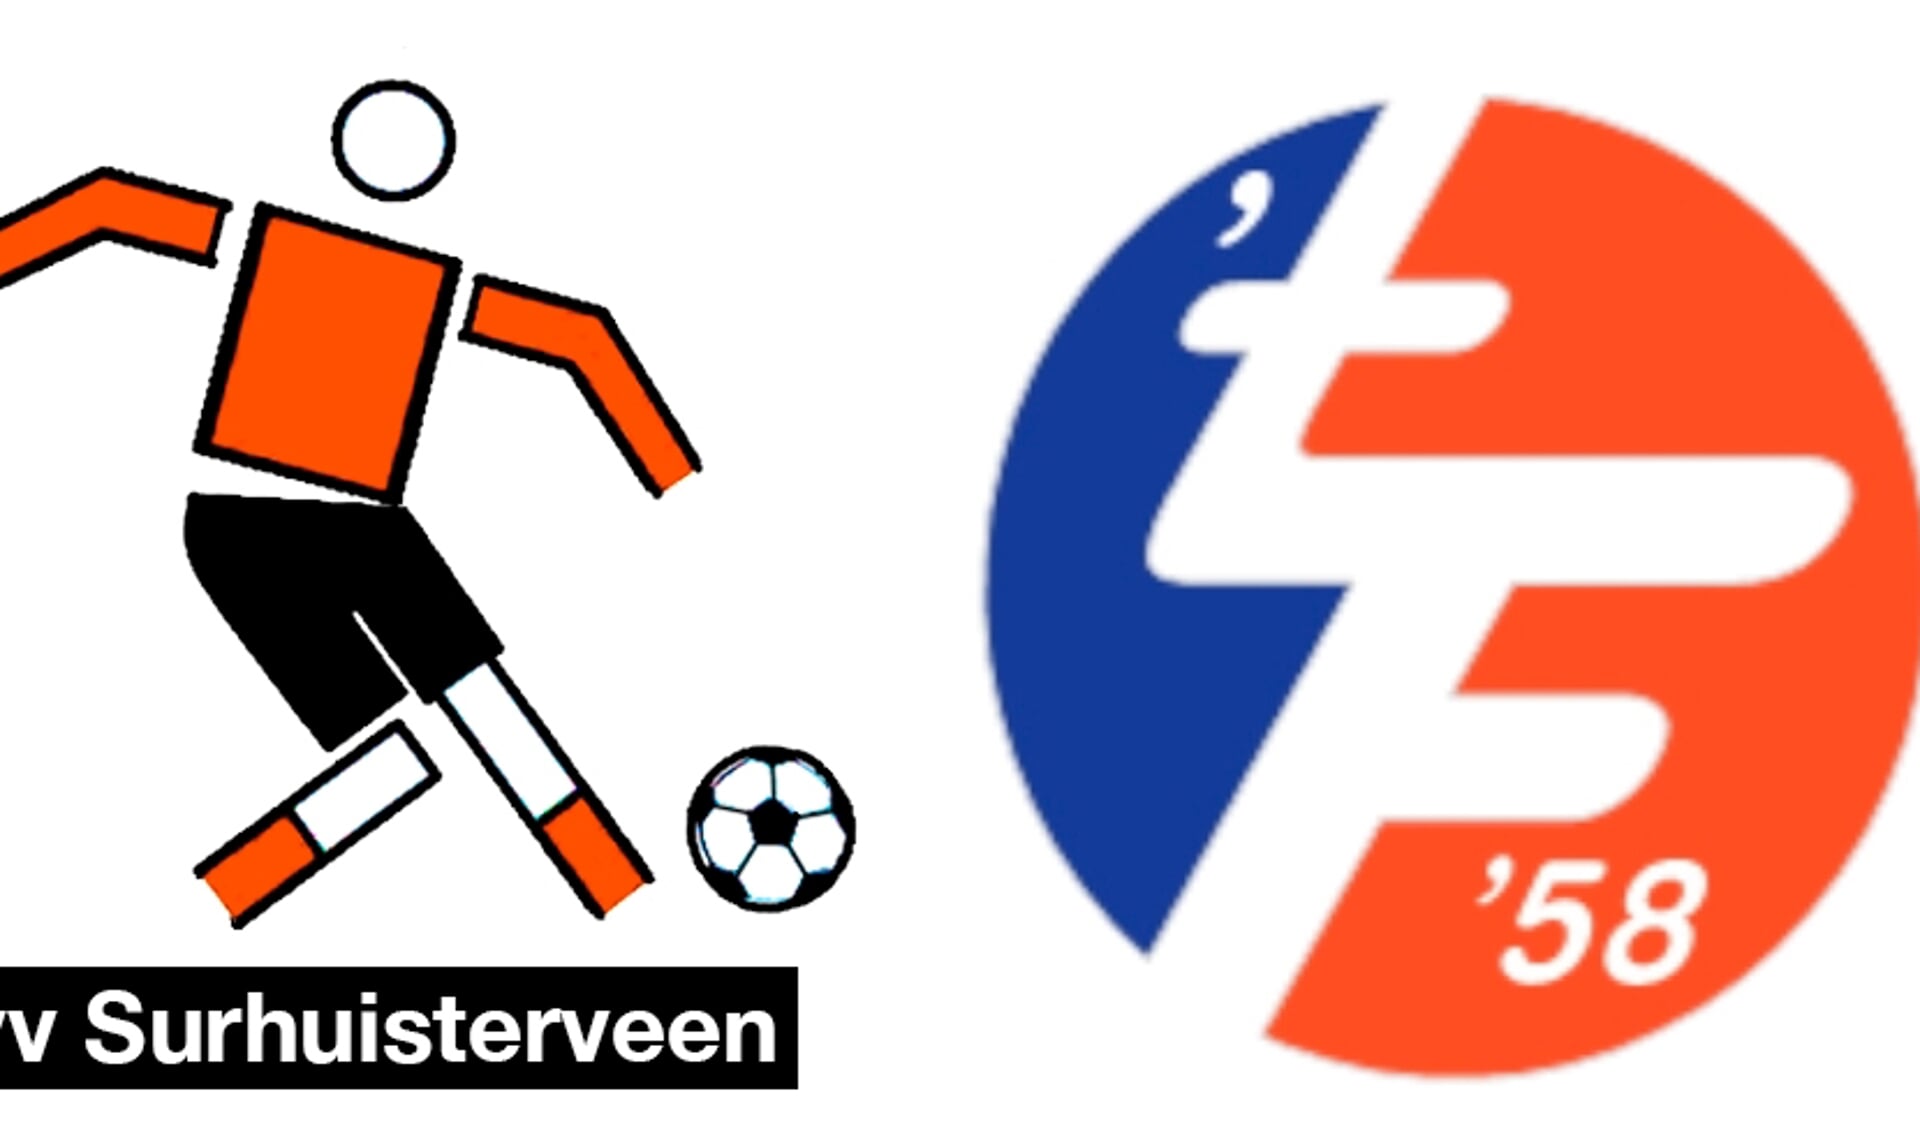 De huidige logo's van VV Surhuisterveen en 't Fean '58. In de toekomst misschien 'Feanstars'? Onder die naam spelen en trainen de jeugdleden.